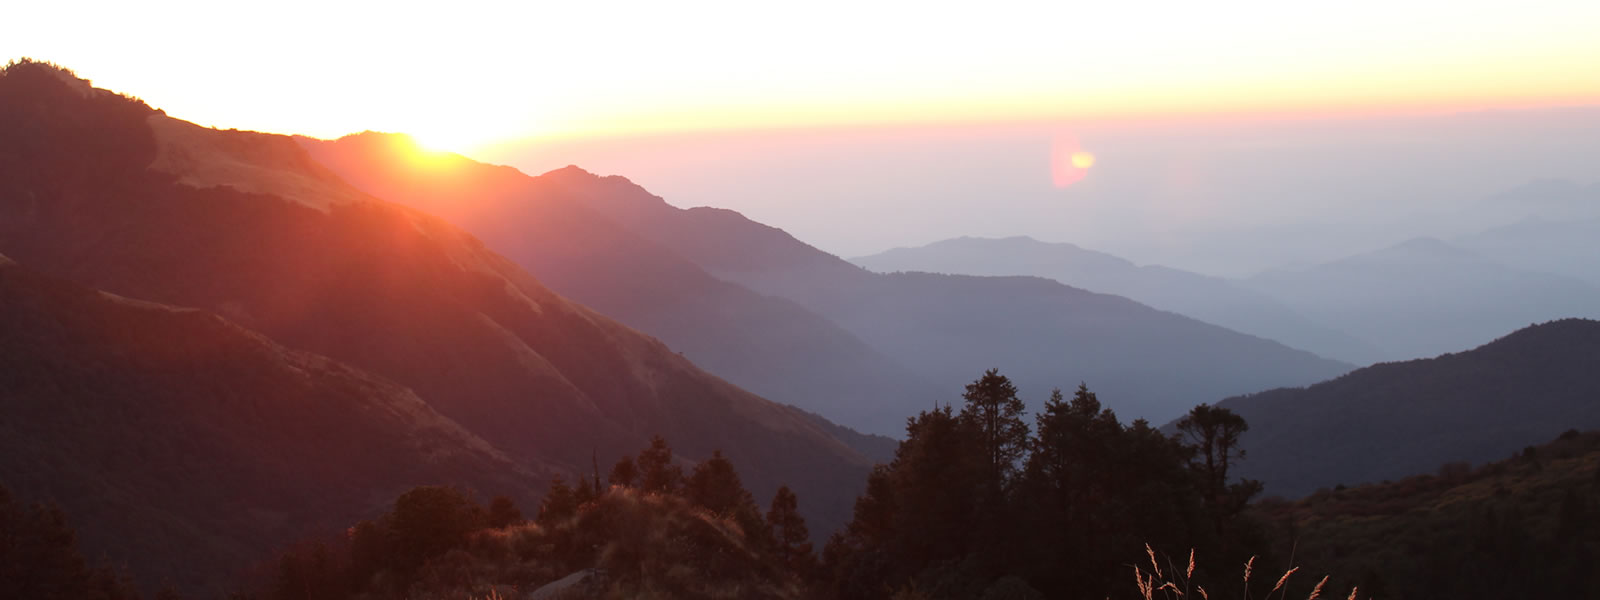 trekking-in-nepal-in-november-ghorepani-poonhill-trek